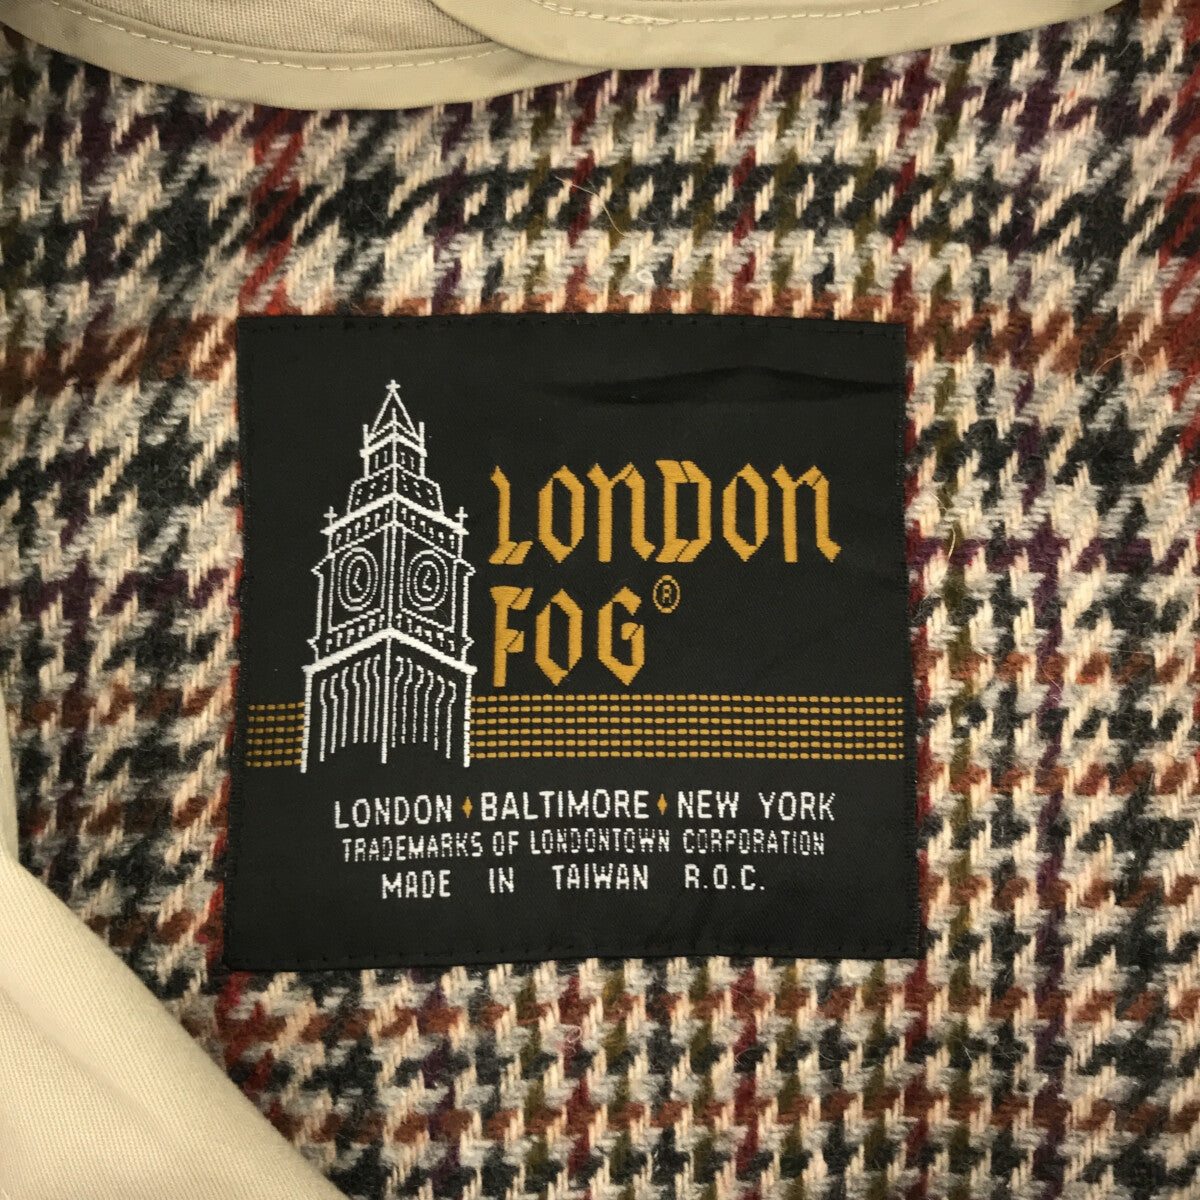 London Fog / ロンドンフォグ | 80s ～ VINTAGE ステンカラーコート | 6PET | ベージュ | メンズ